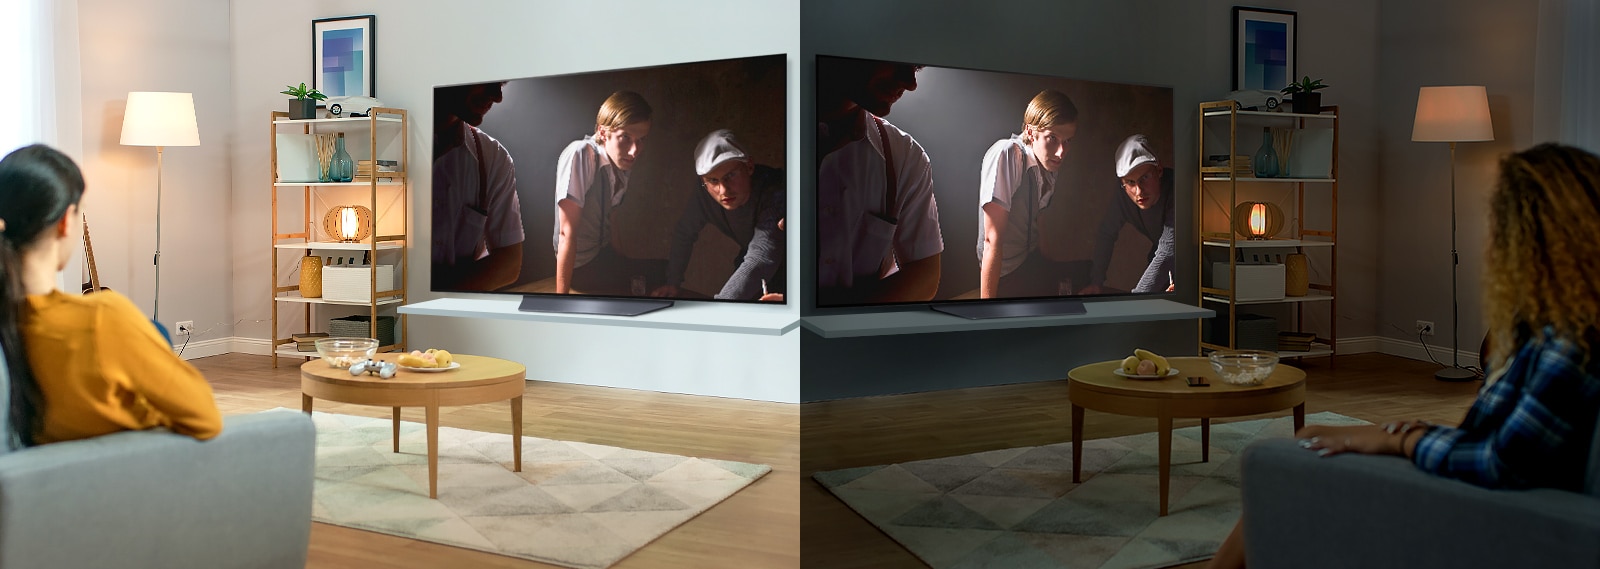 Hai hình ảnh một người phụ nữ đang ngồi trên sofa xem phim bằng TV lớn treo tường. Hình bên trái sáng, còn hình bên phải là phòng tối.